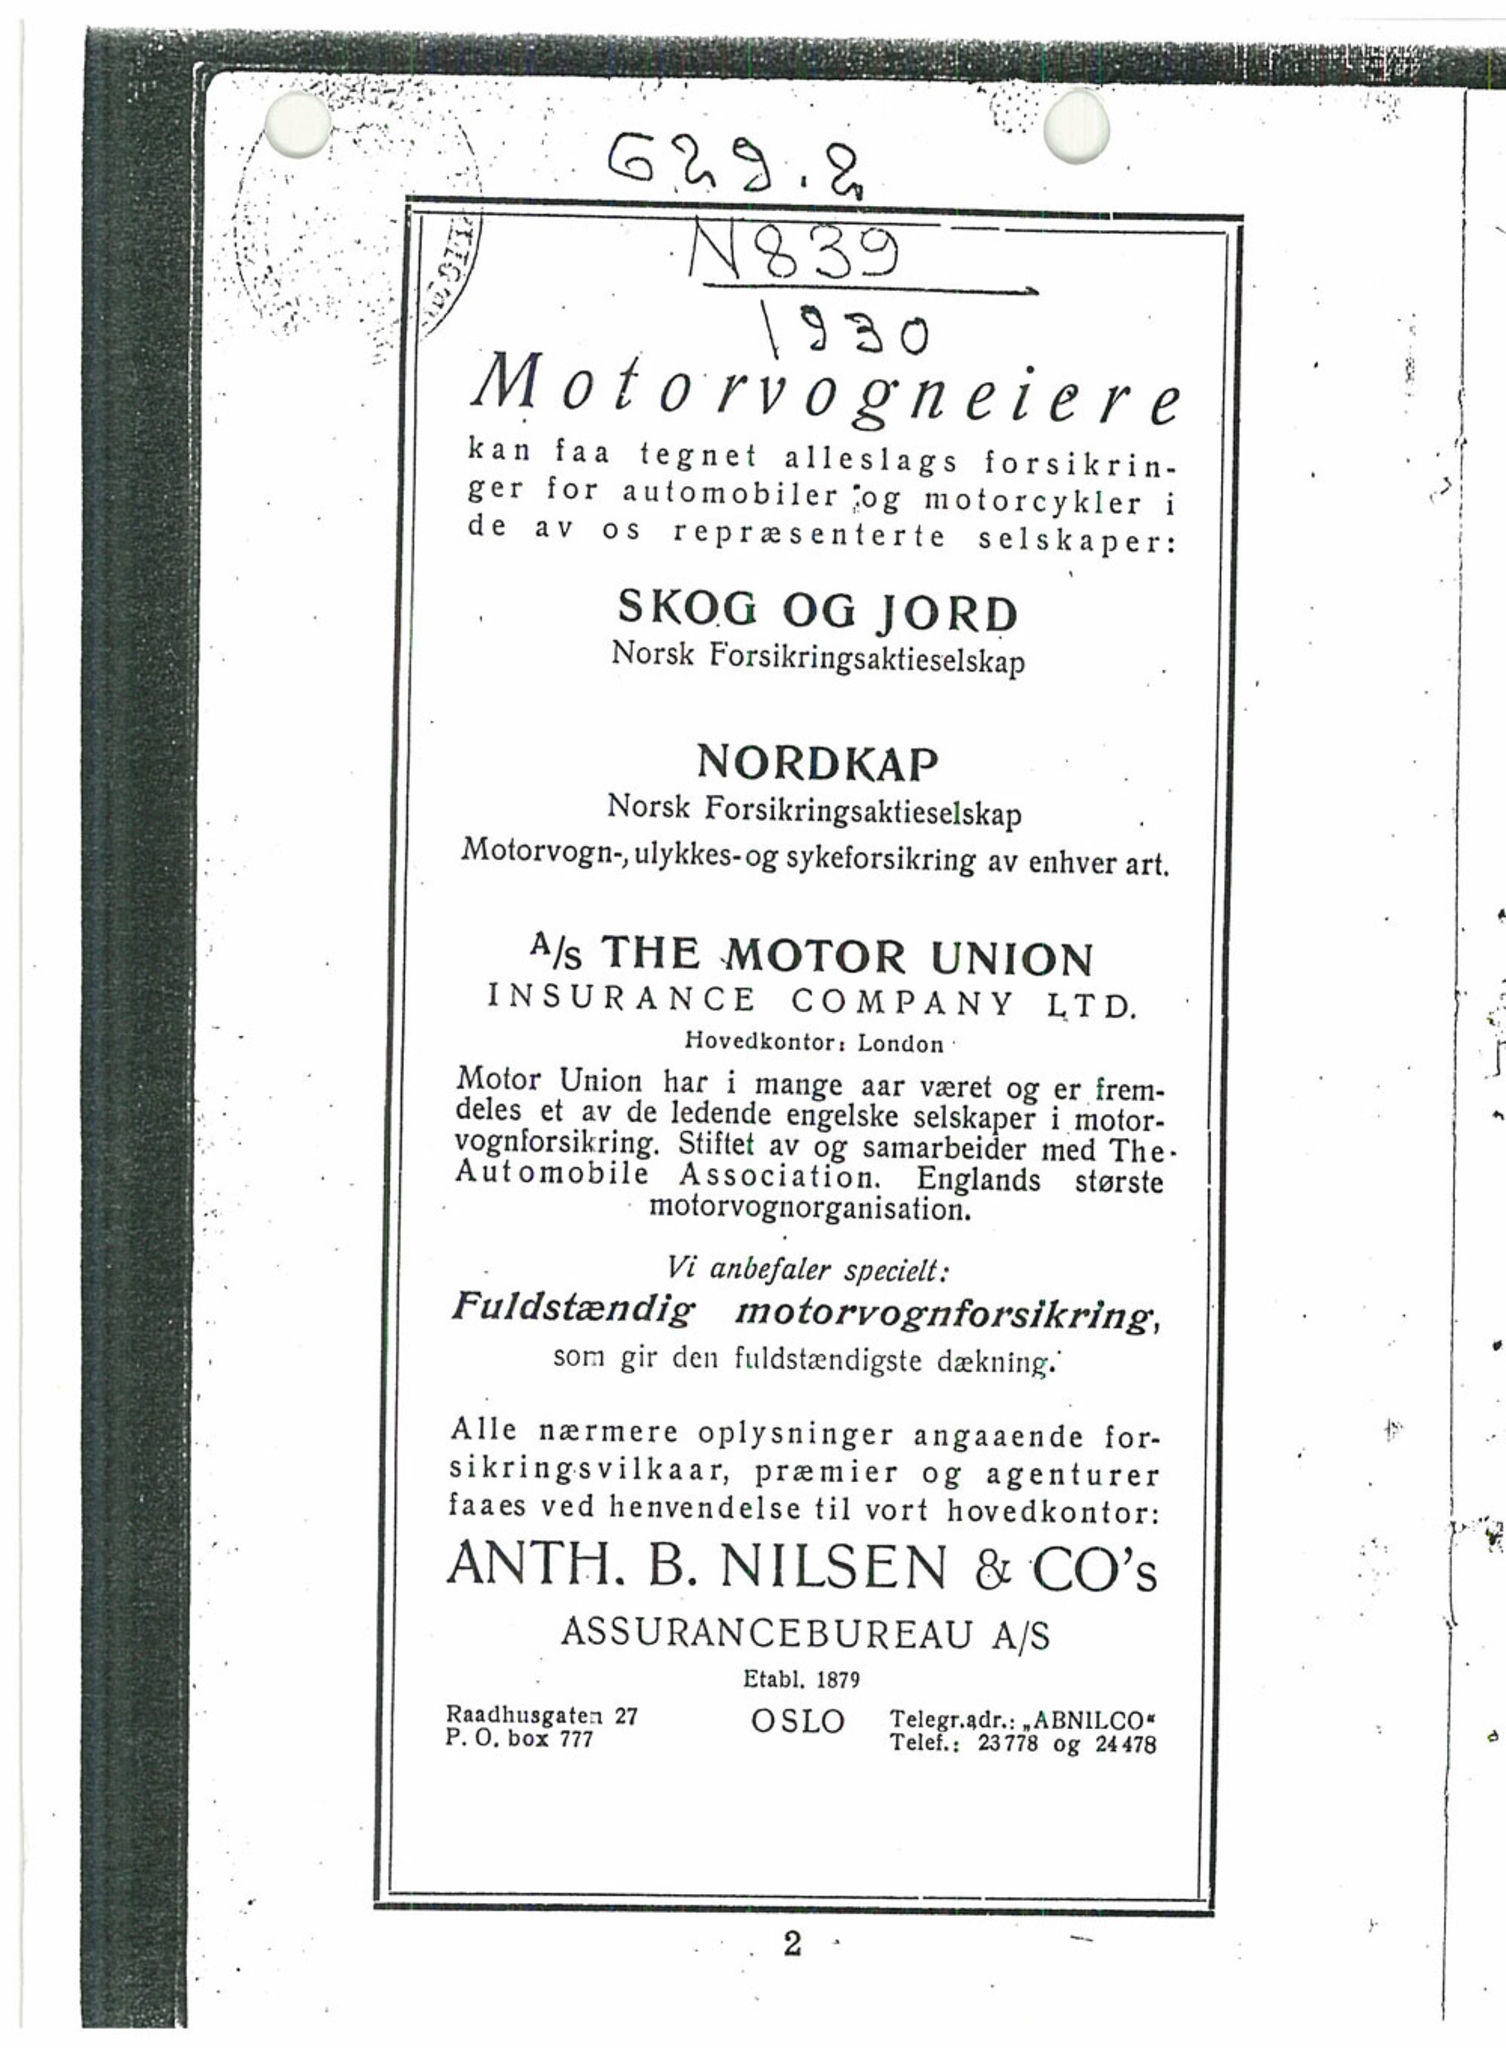 Andre publikasjoner, PUBL/PUBL-999/0001/1930: Bilboken for Norge 1930, 1930